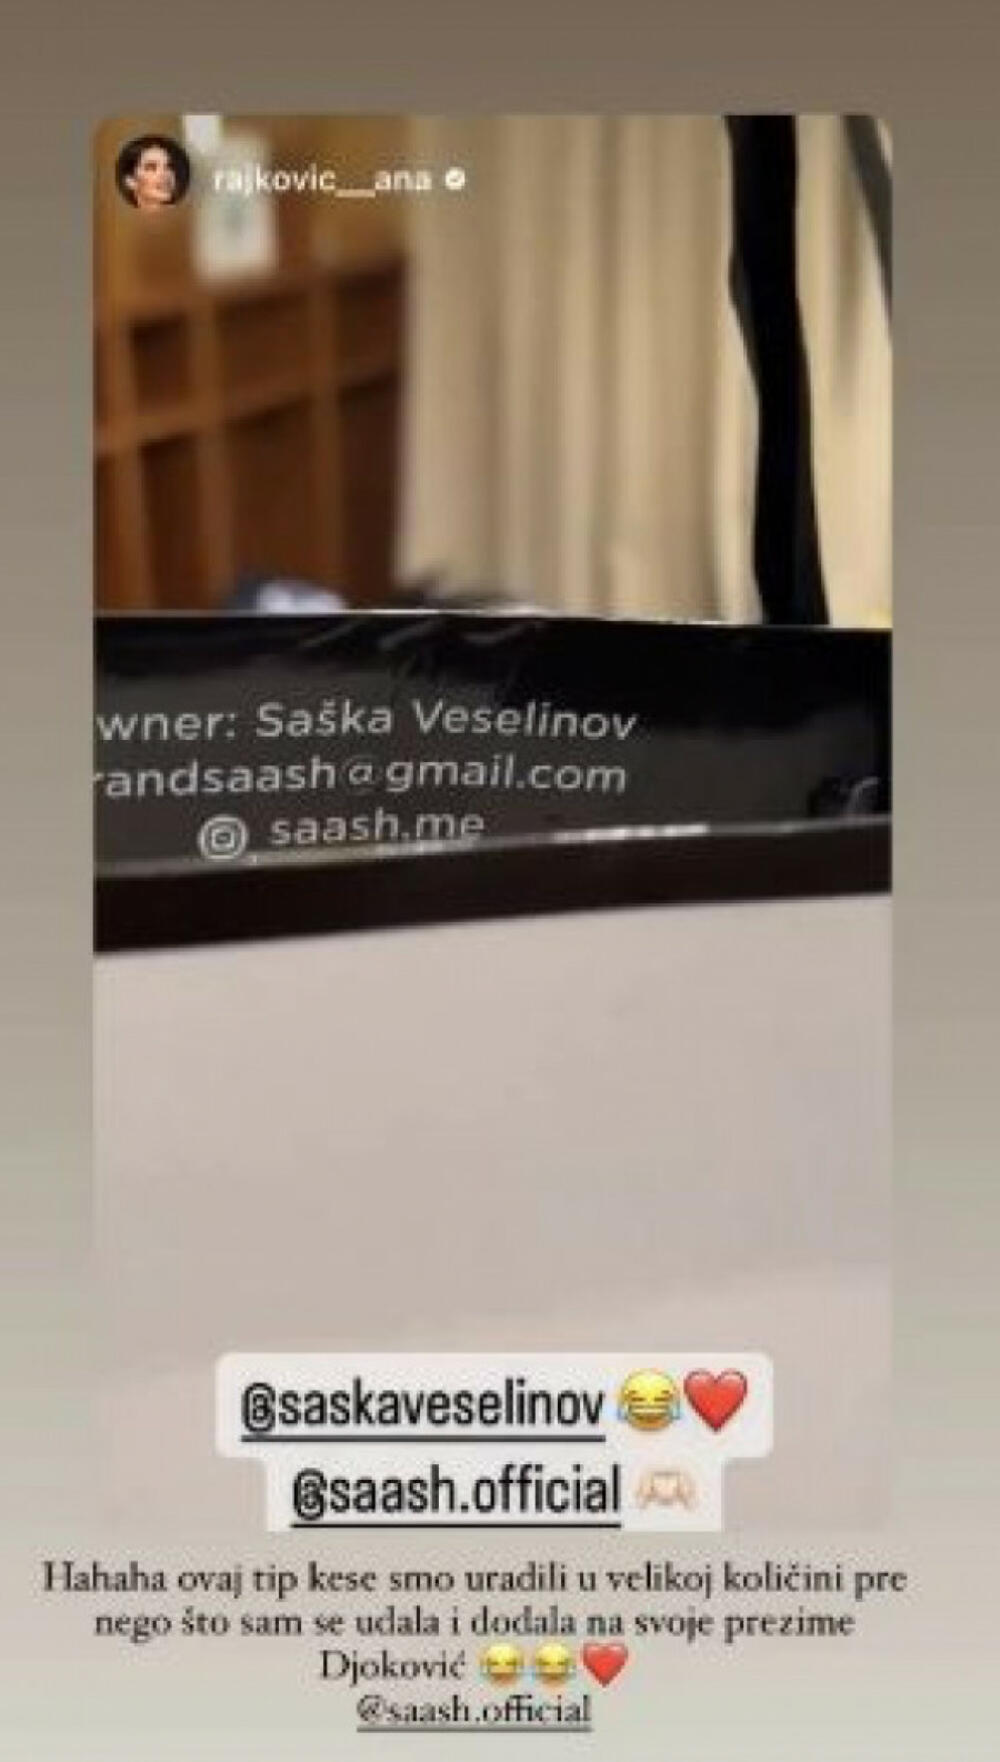 Saška Veselinov i dalje koristi devojačko prezime